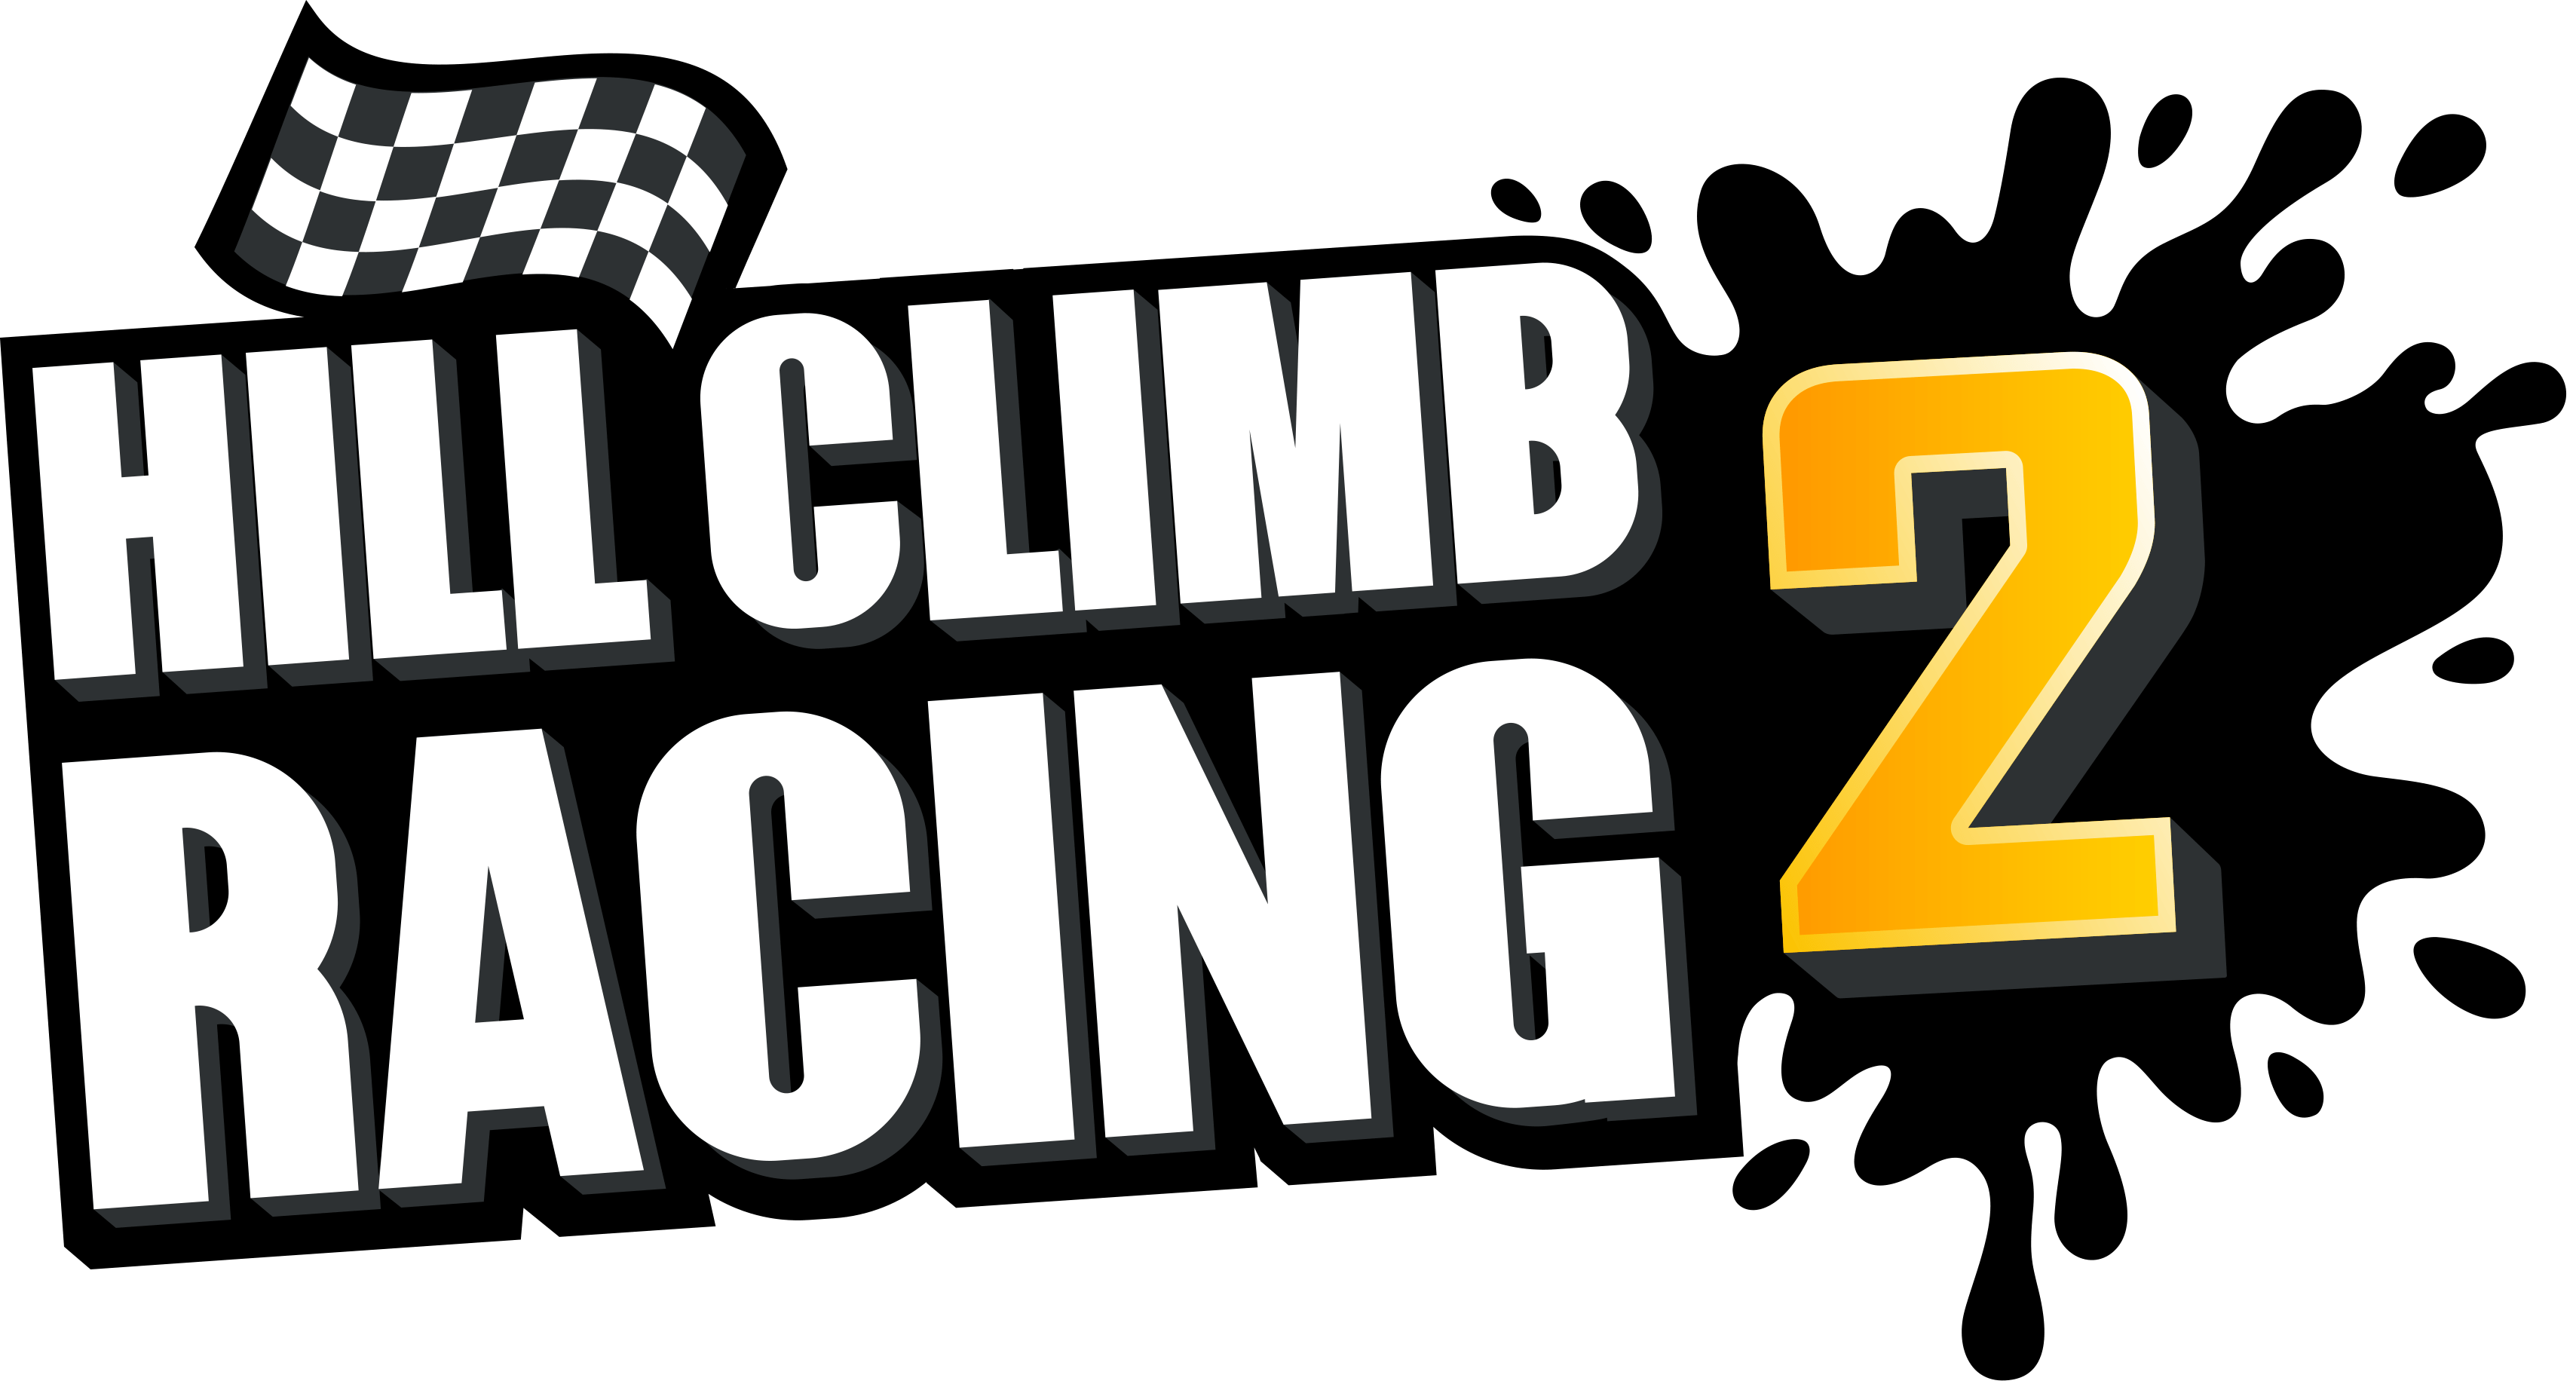 Hill Climb Racing 2 Wallpapers - Wallpaper Cave